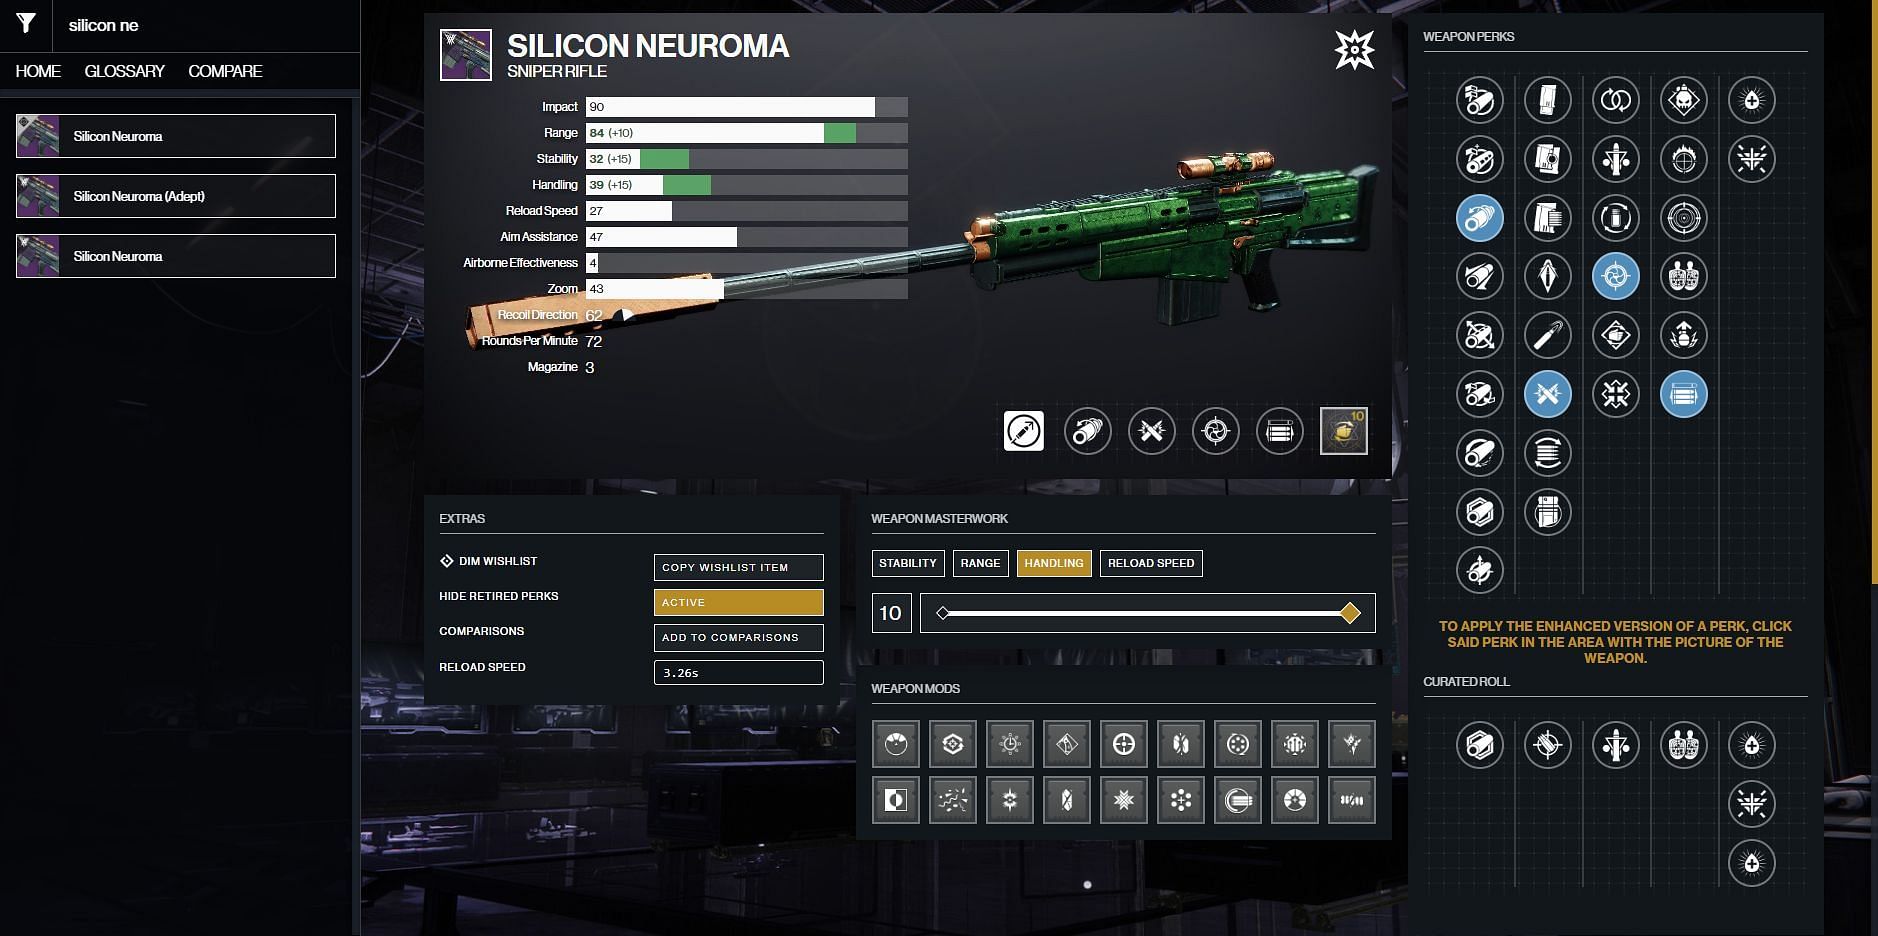 Silicon Neuroma PvP god roll (Image via Destiny 2 Gunsmith)